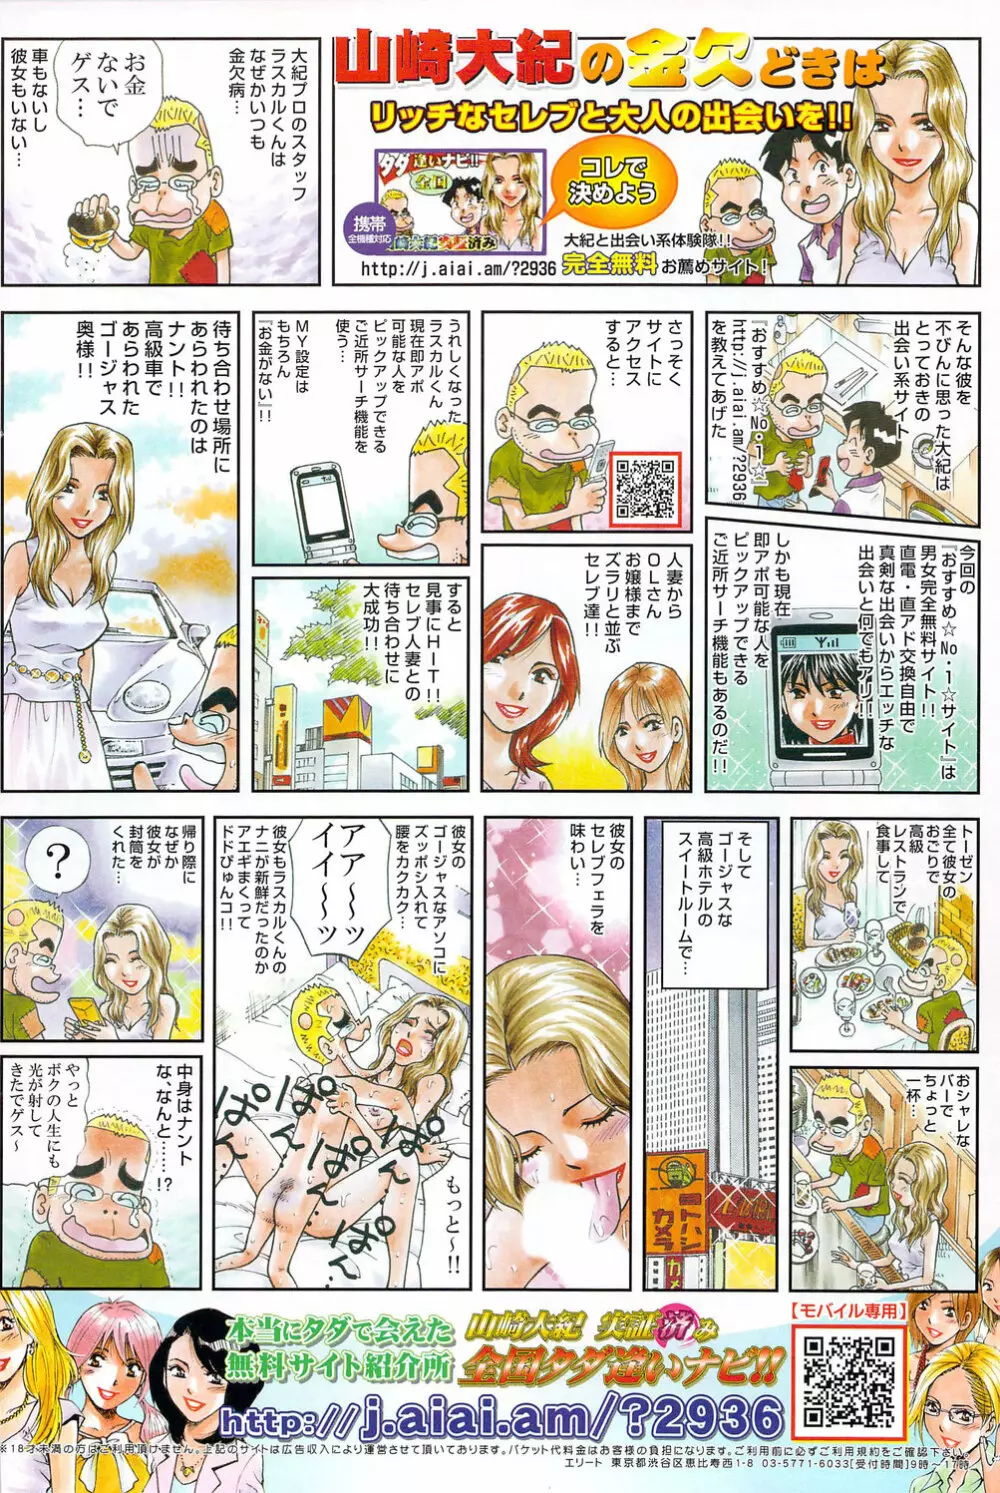 メンズヤングスペシャルIKAZUCHI雷 Vol.12 2009年12月号増刊 130ページ